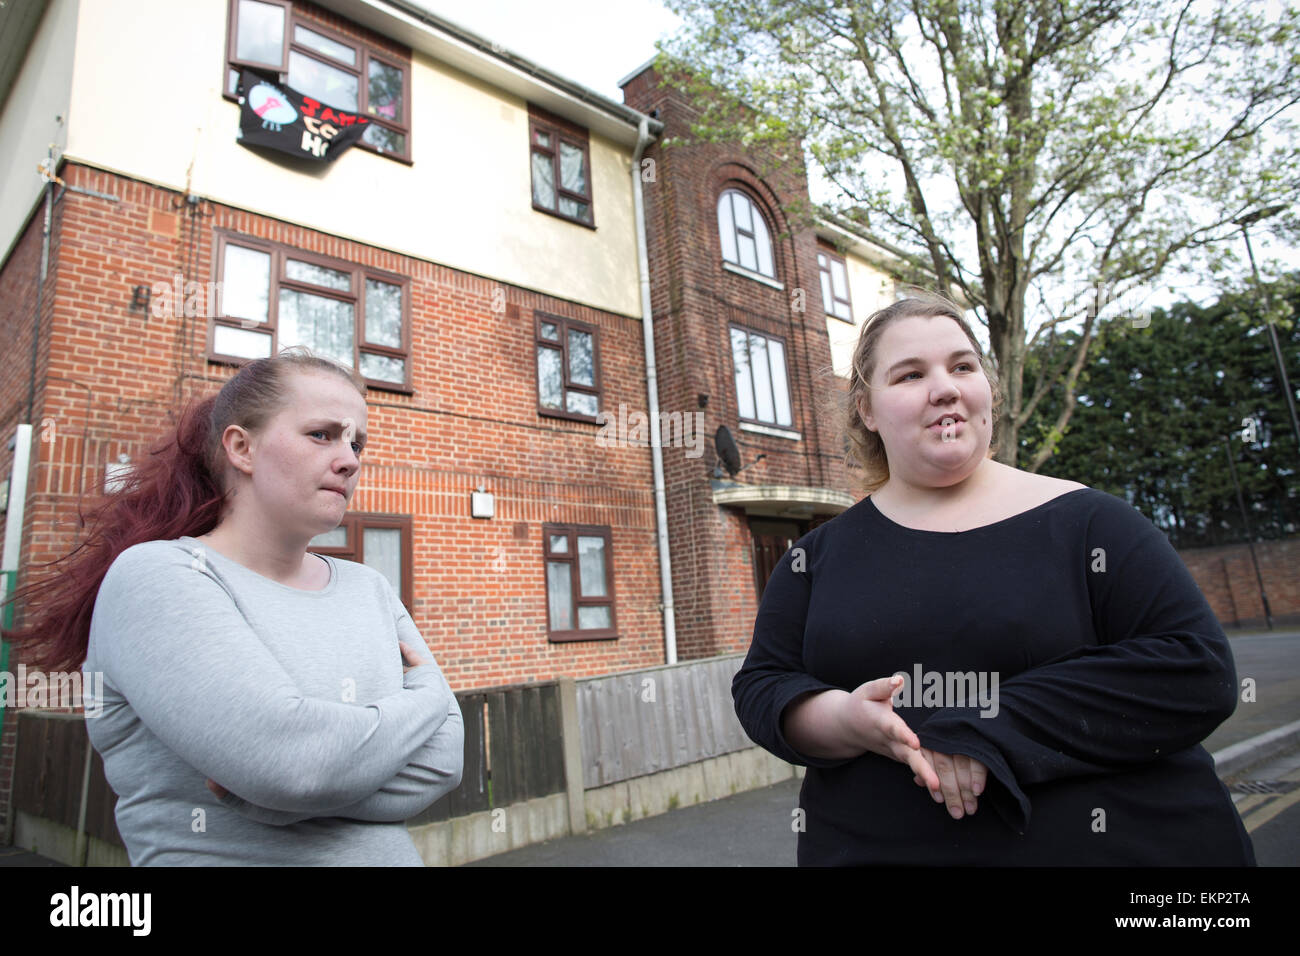 Focus E15 Mères activistes logement Pierre Jasmin (à droite) et Samantha Middleton à Newham, dans le sud-est de Londres, Angleterre, Royaume-Uni Banque D'Images